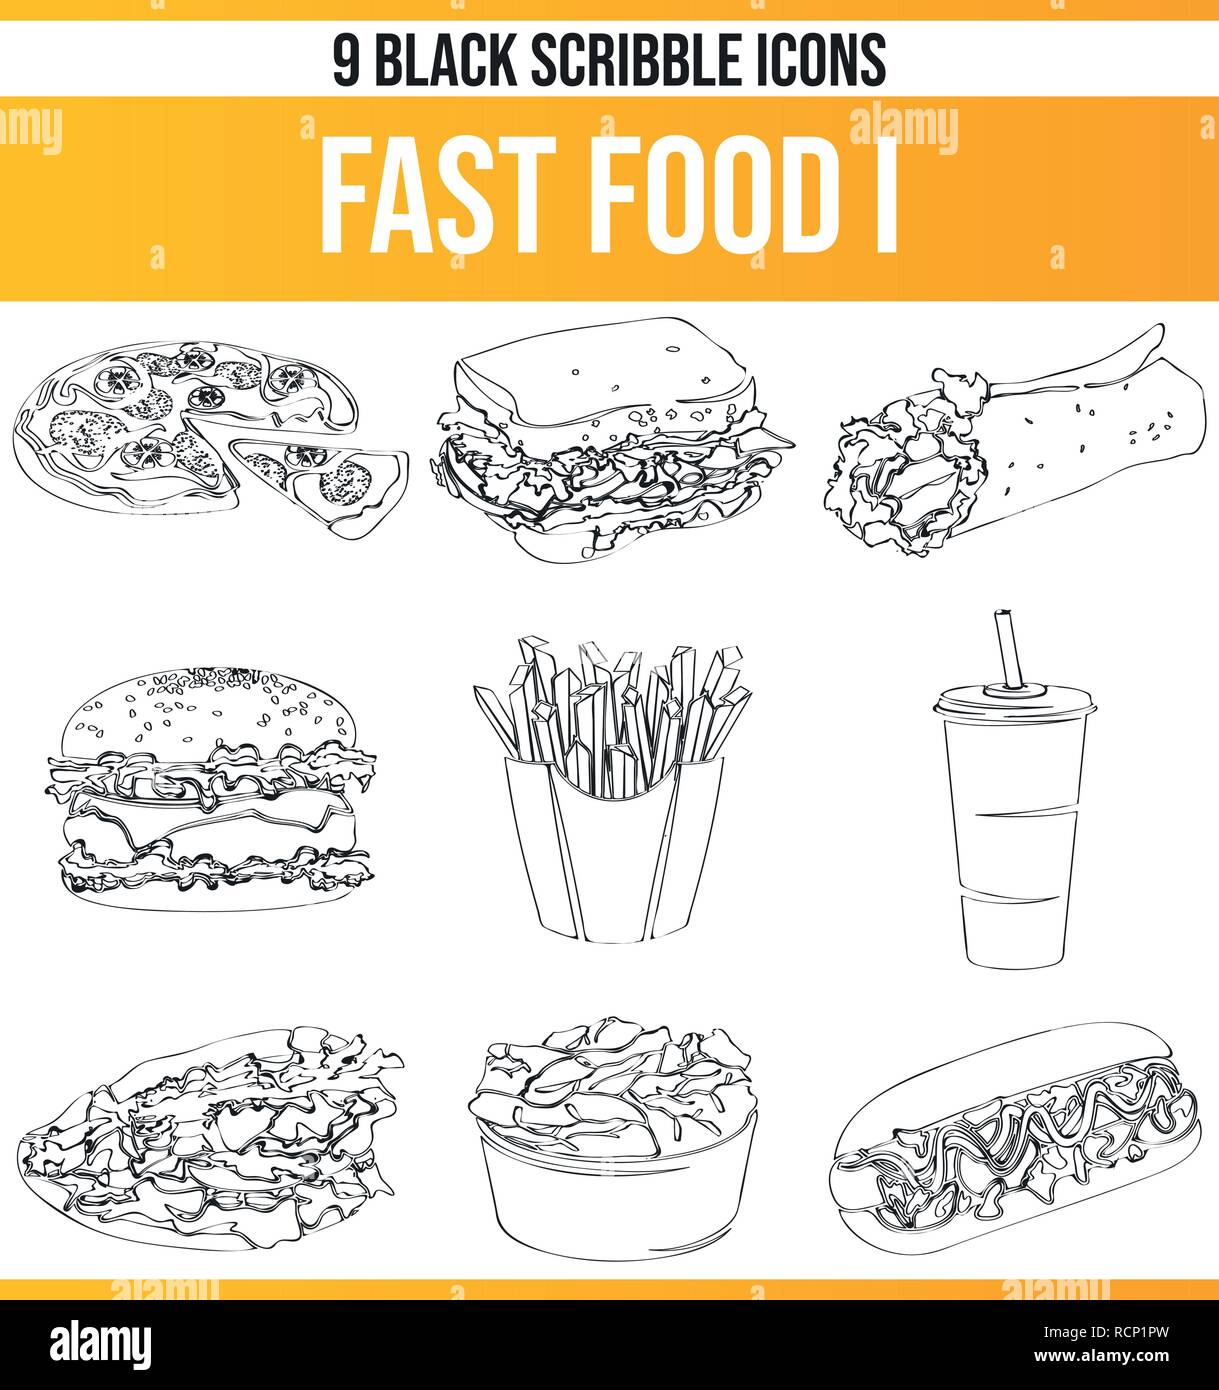 Schwarzen Symbole/Icons auf fast food. Dieses Icon Set ist perfekt für kreative Menschen und Designer, die das Thema fast food in ihrem grafischen Notwendigkeit des Stock Vektor